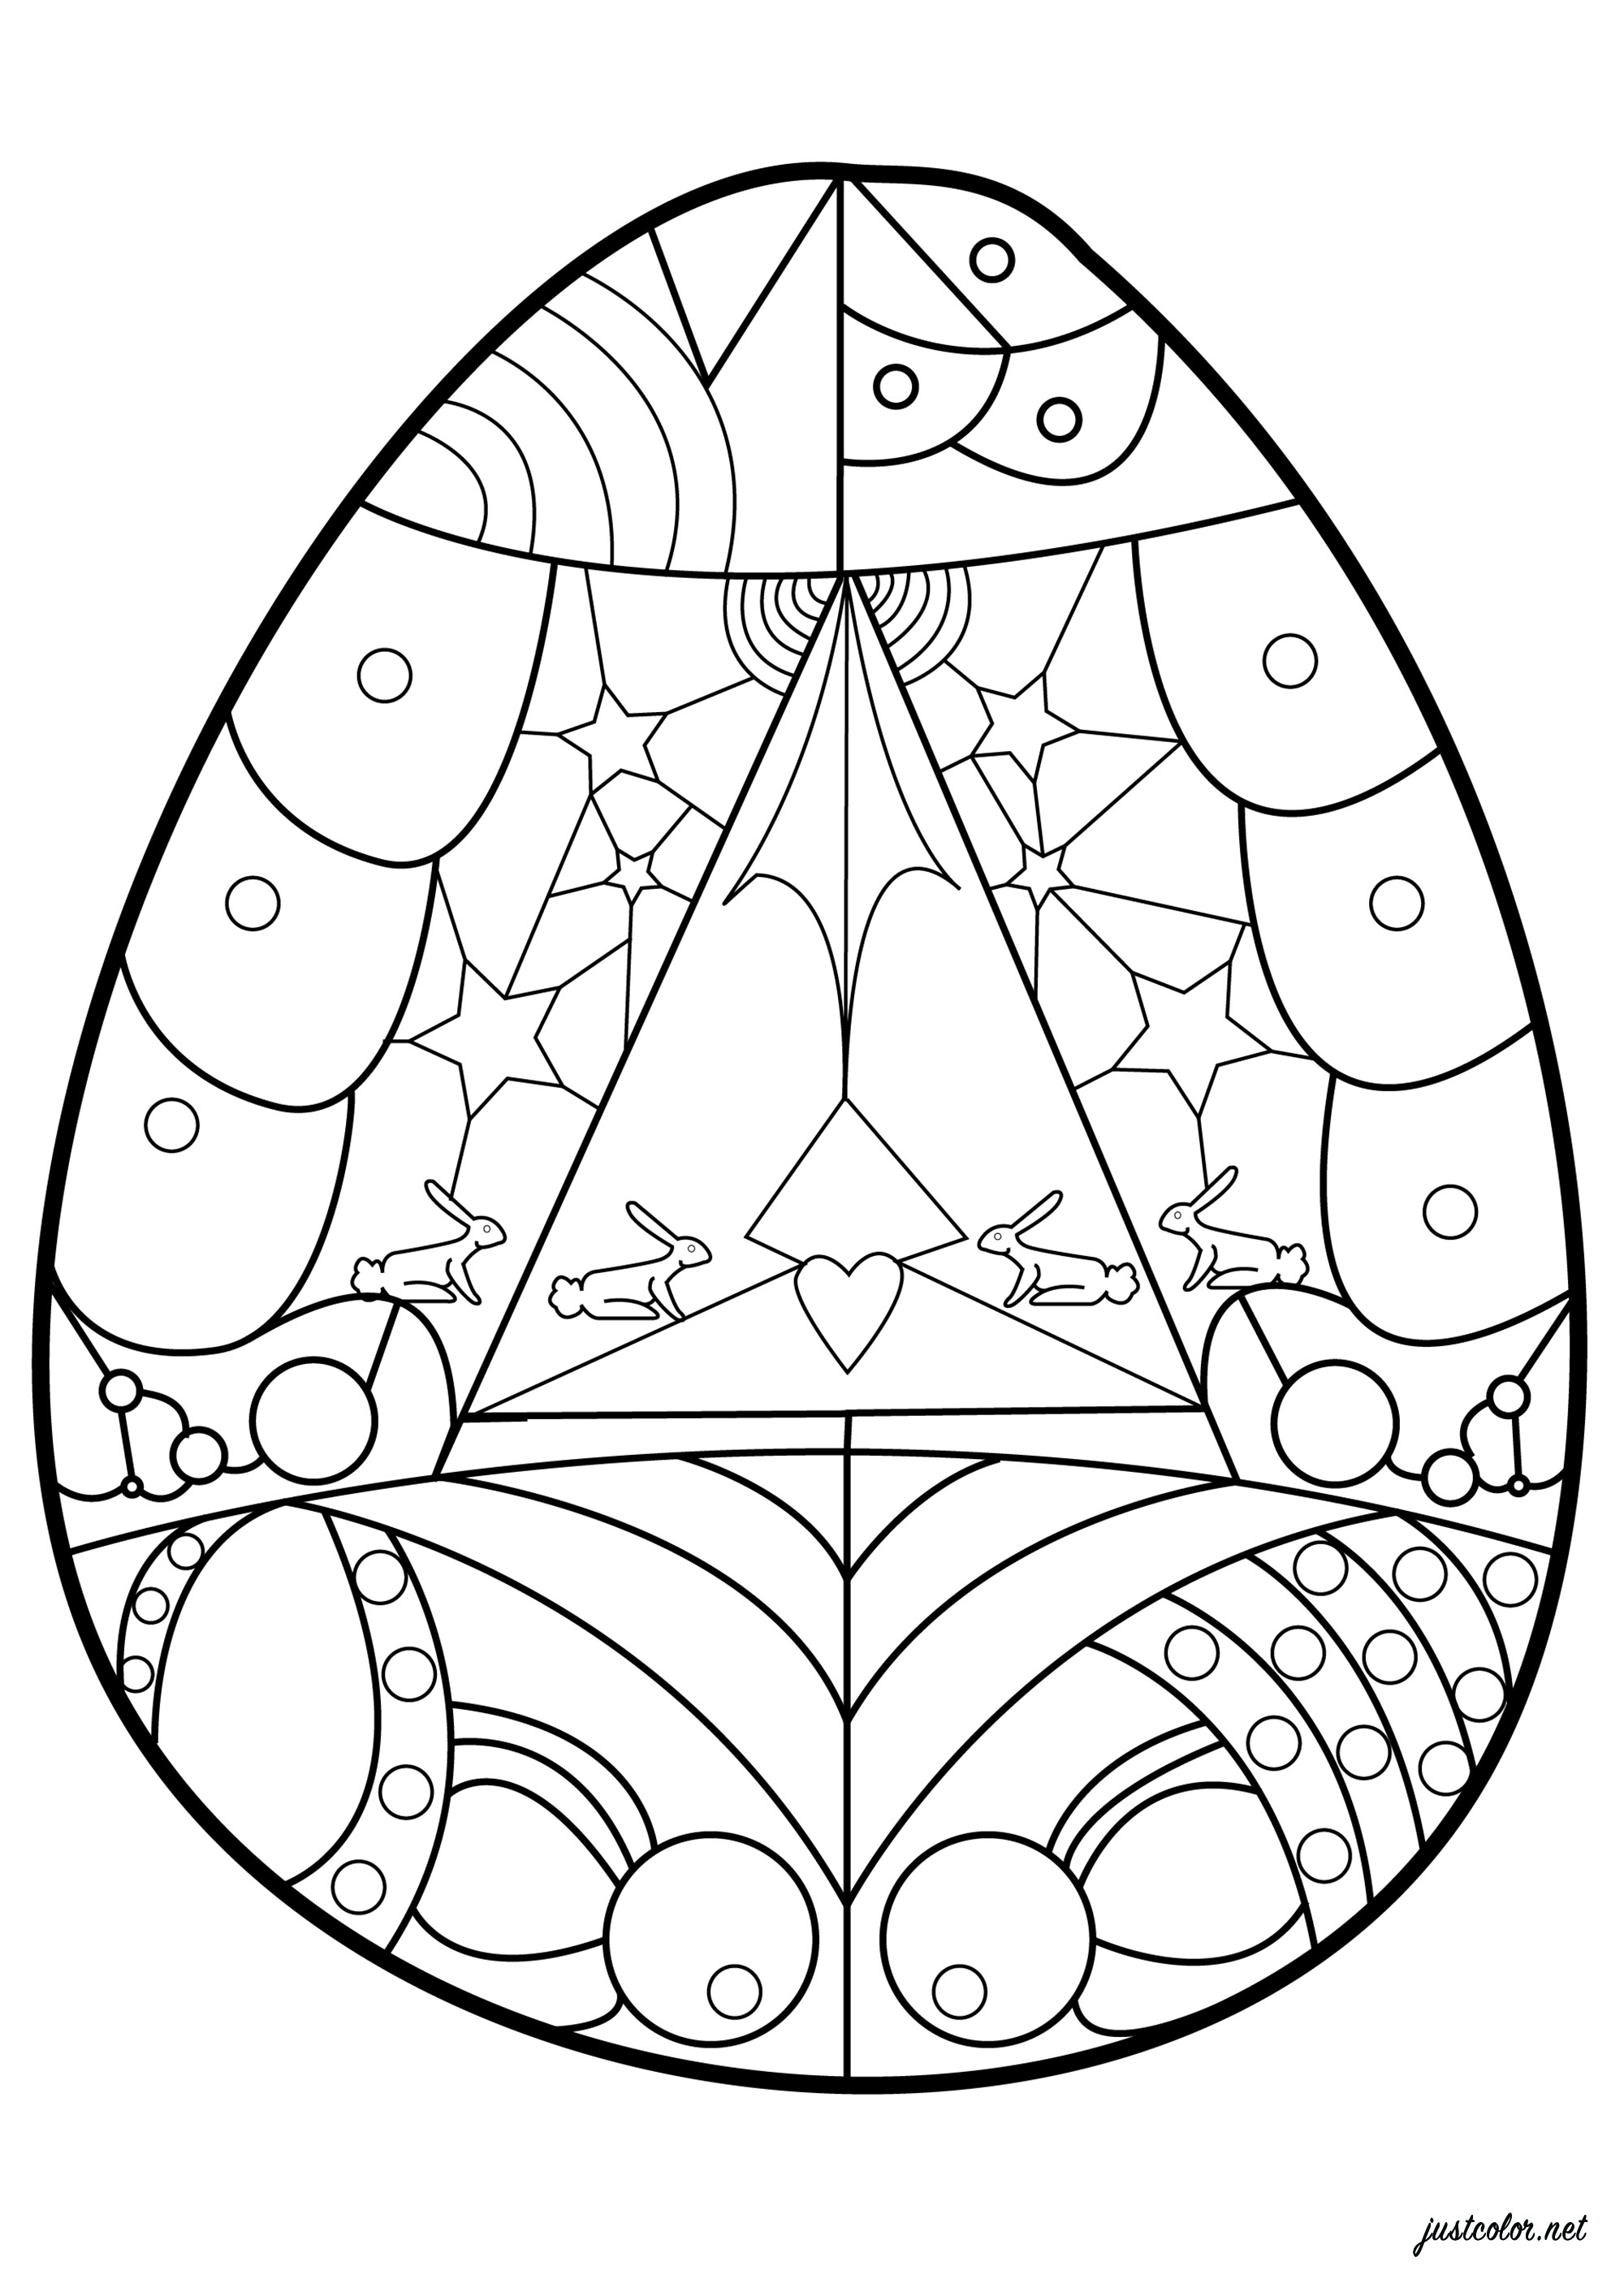 Huevo de Pascua para colorear con motivos geométricos, Artista : Esteban